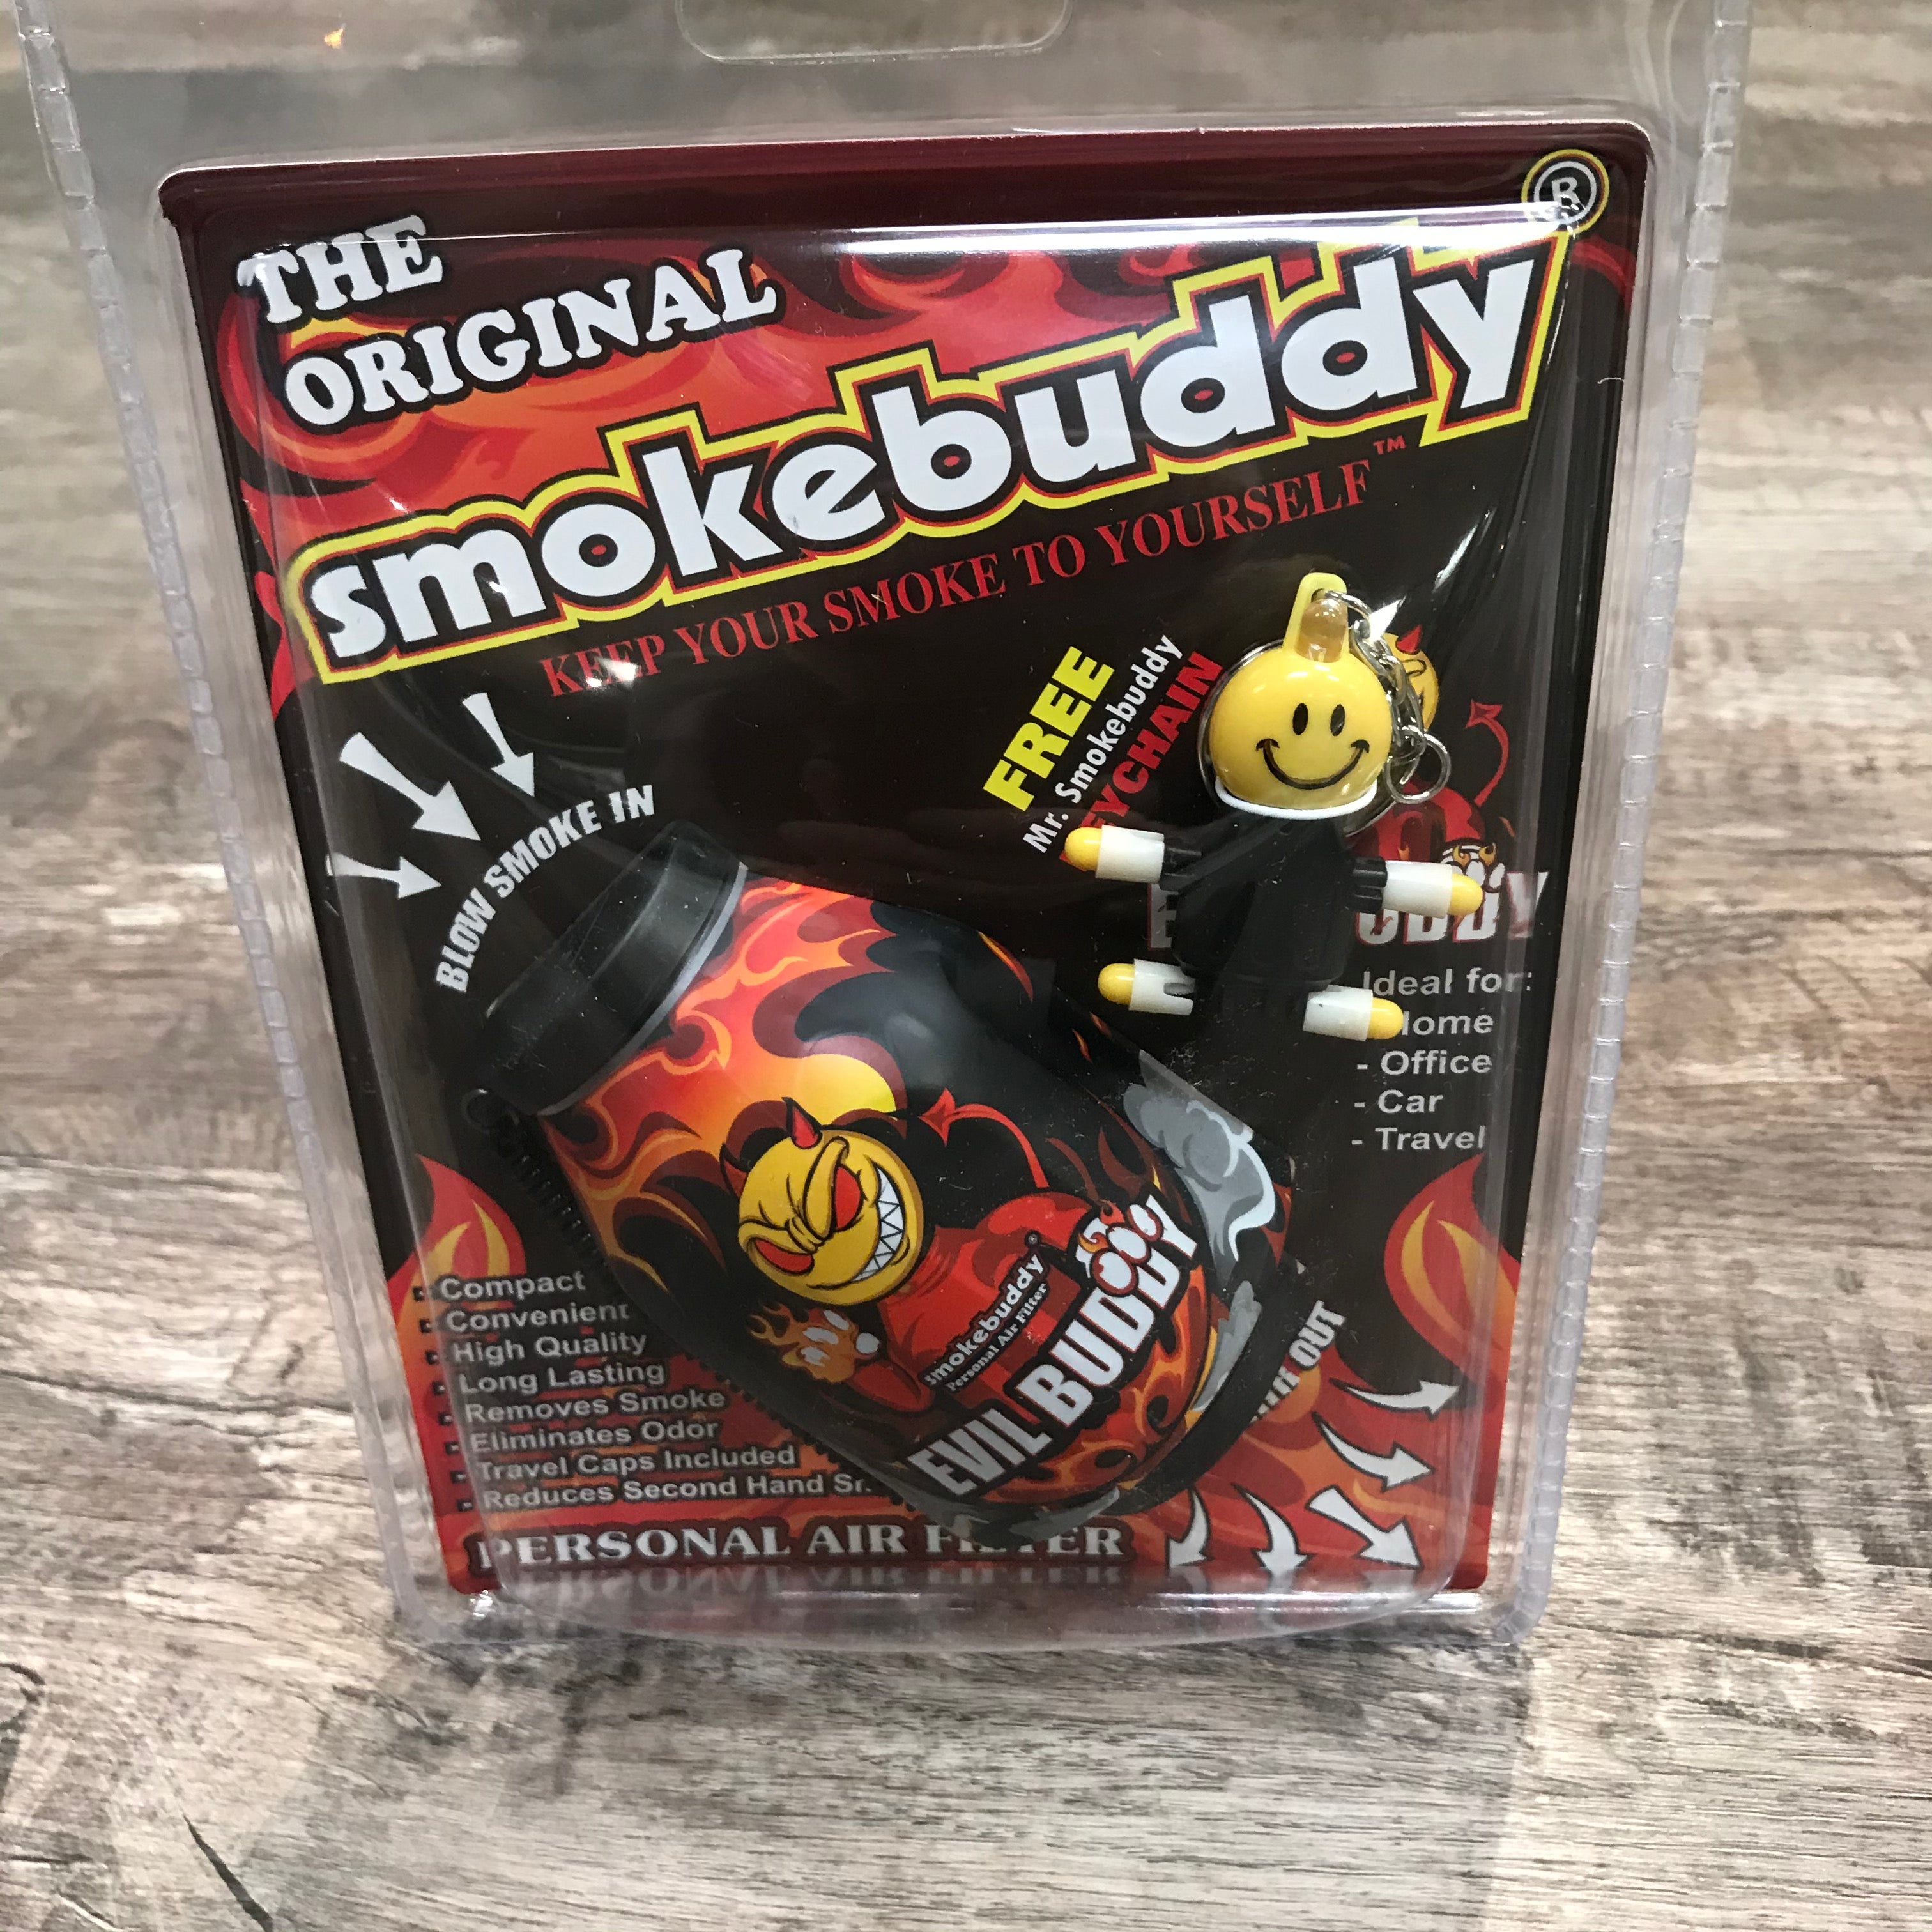 The Original Smoke Buddy